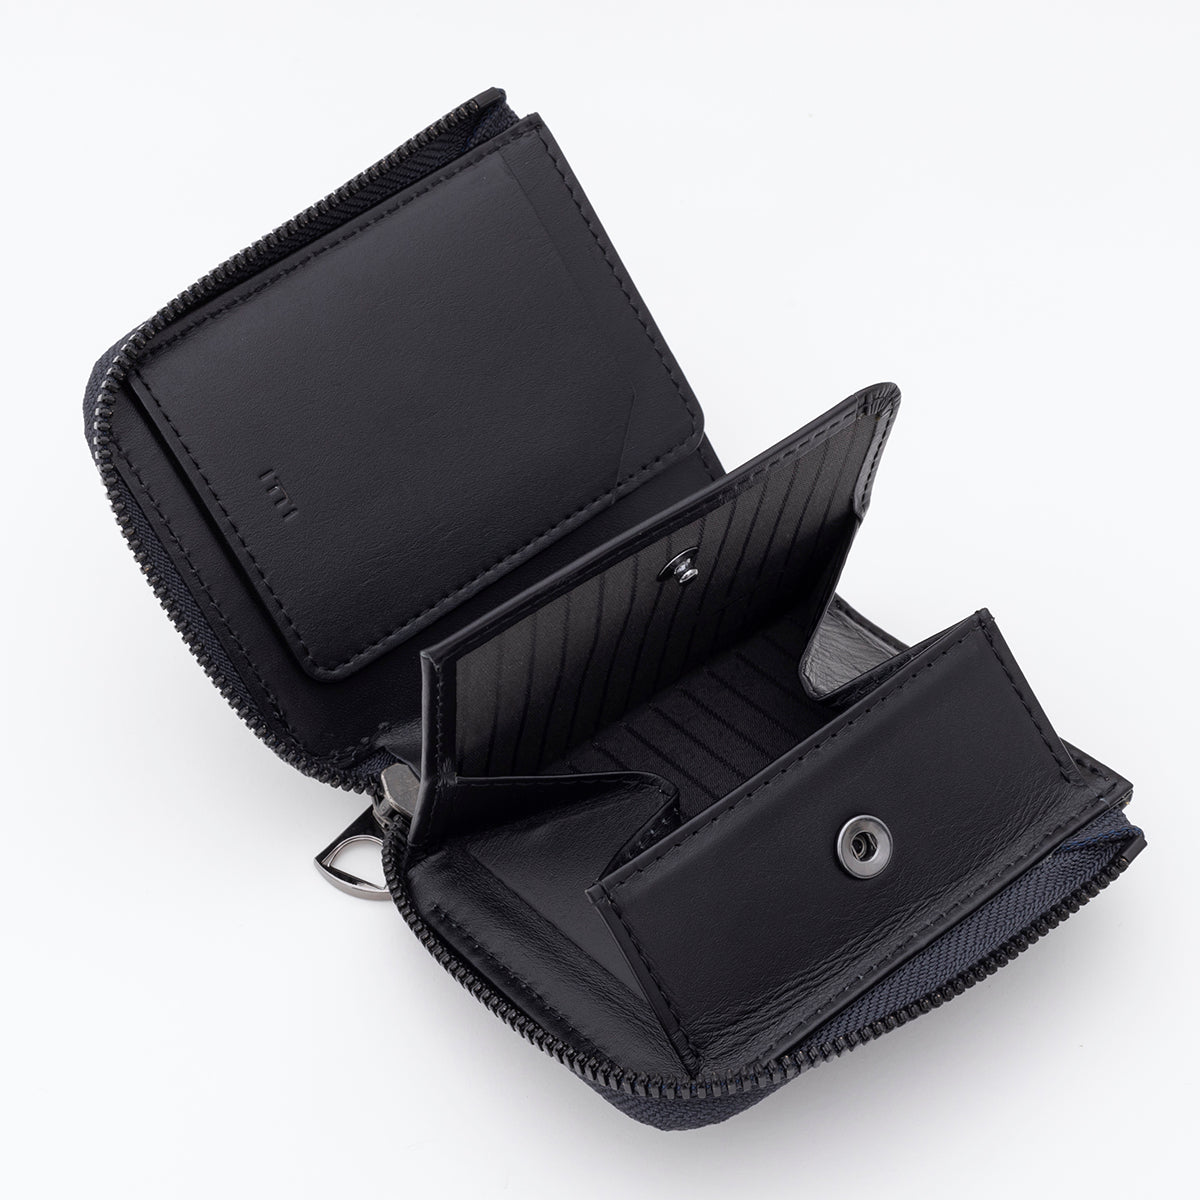 ITTI (イッチ) | CRISTY VERY COMPACT WLT.5 / BK COLLECTION (クリスティベリーコンパクトウォレット/ブラックコレクション) | 本革 レザー メンズ レディース ミニ さいふ 財布 サイフ キャッシュレス 小さい